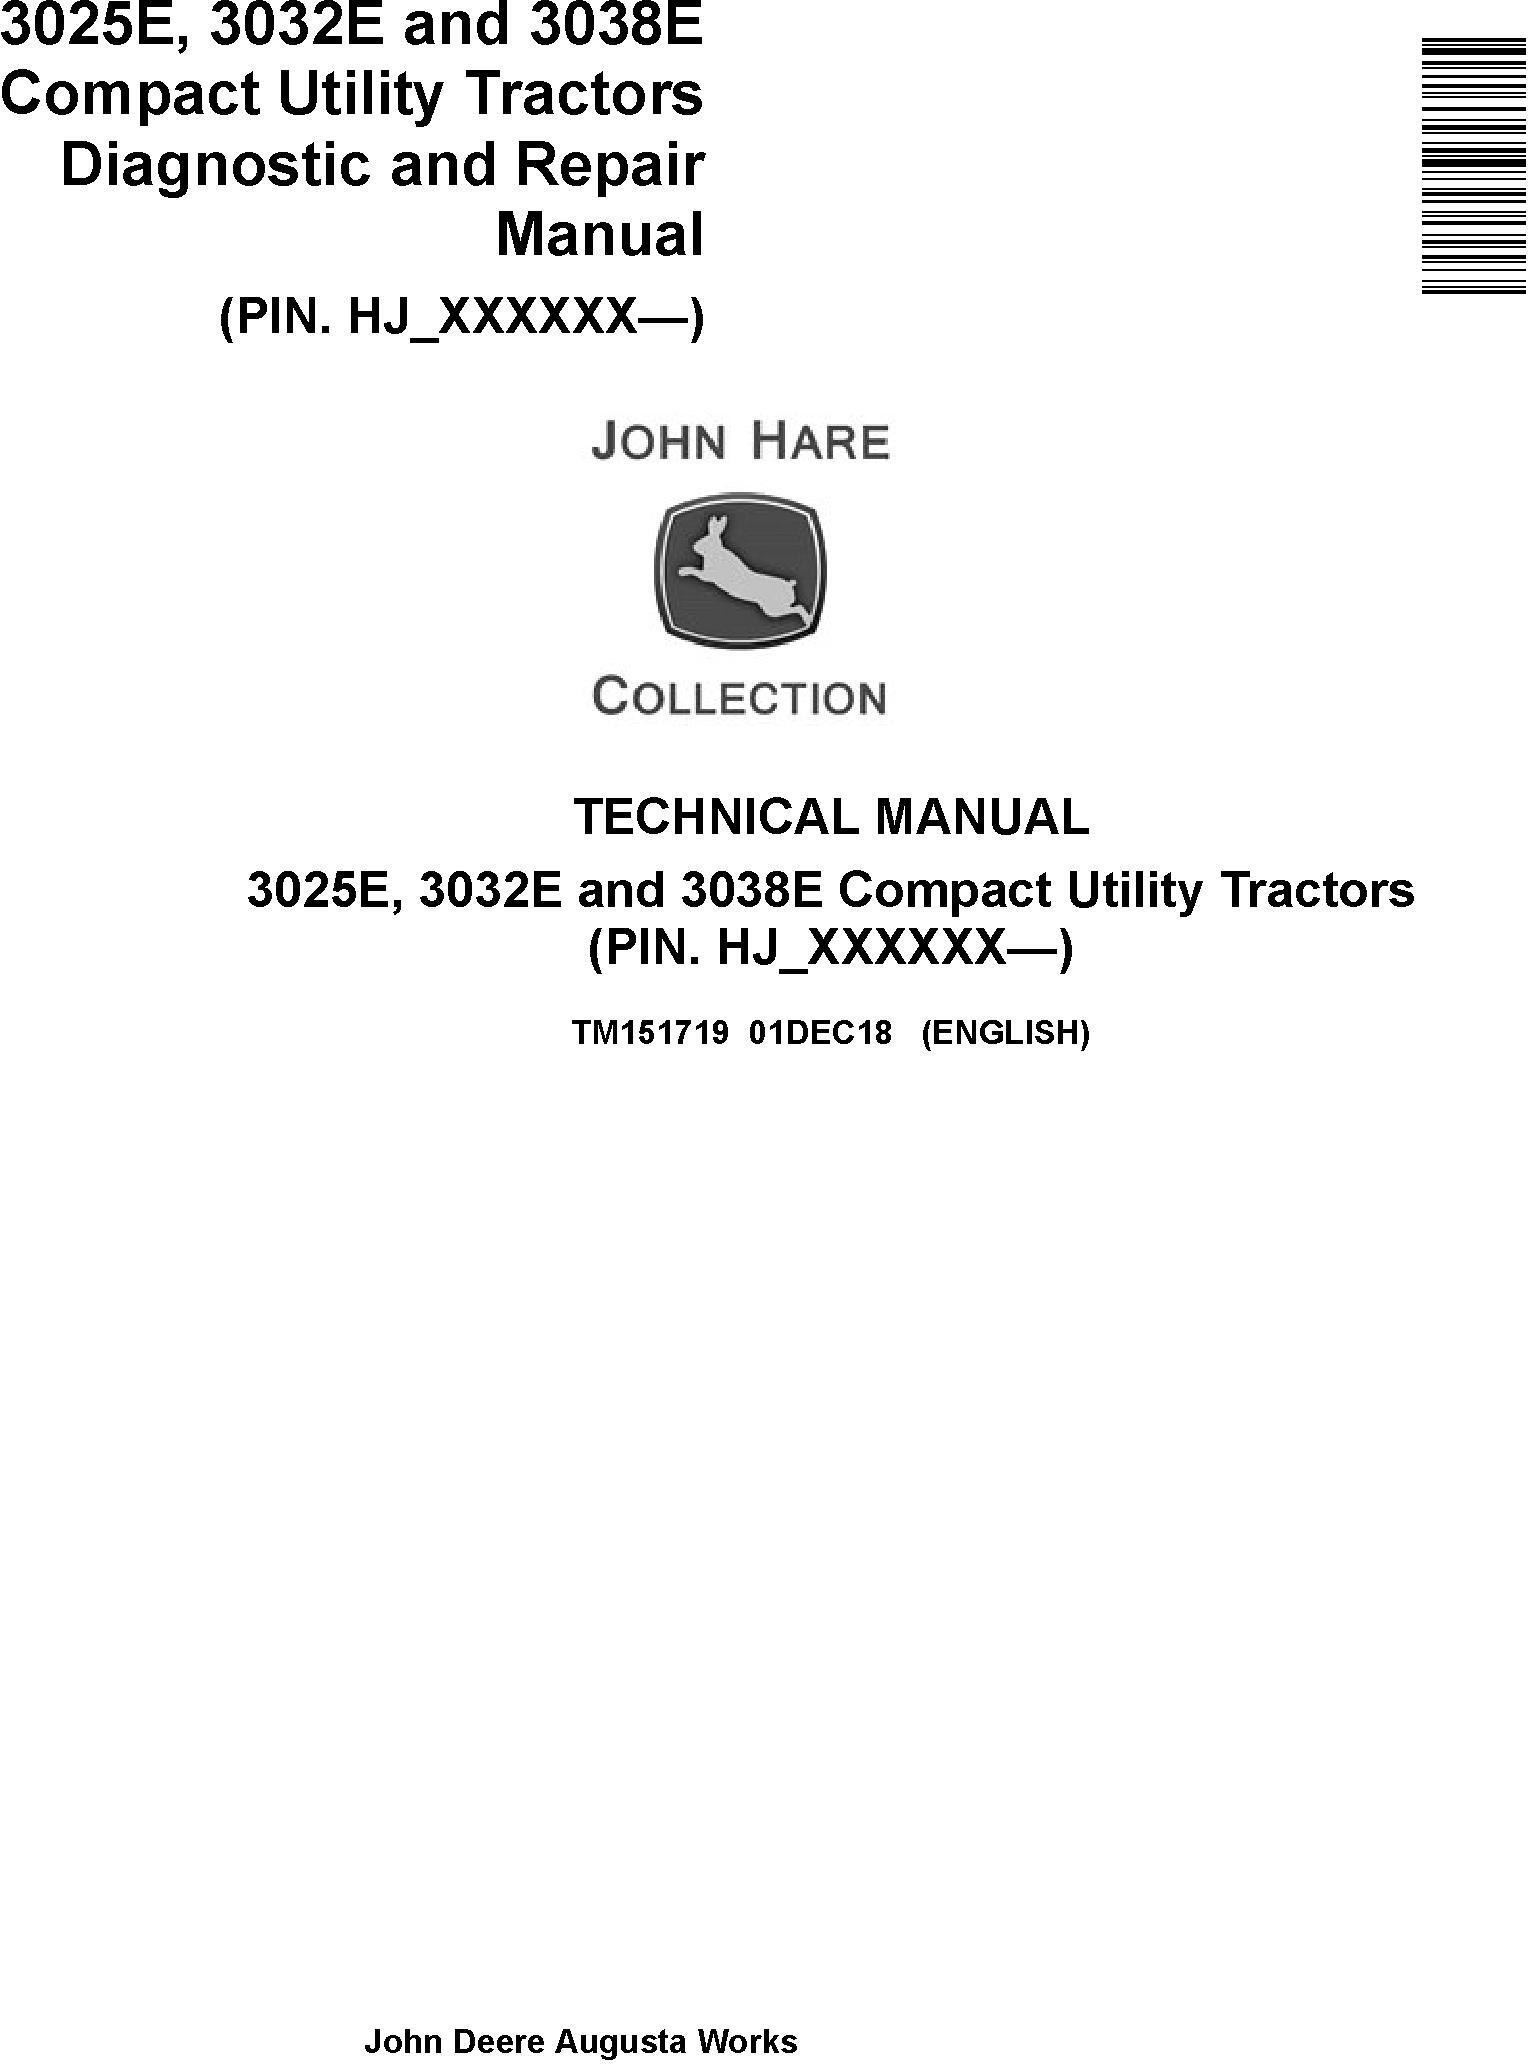 John Deere 3025E, 3032E, 3038E (SN. HJ_000001-) Compact Utility Tractors Technical Manual (TM151719)